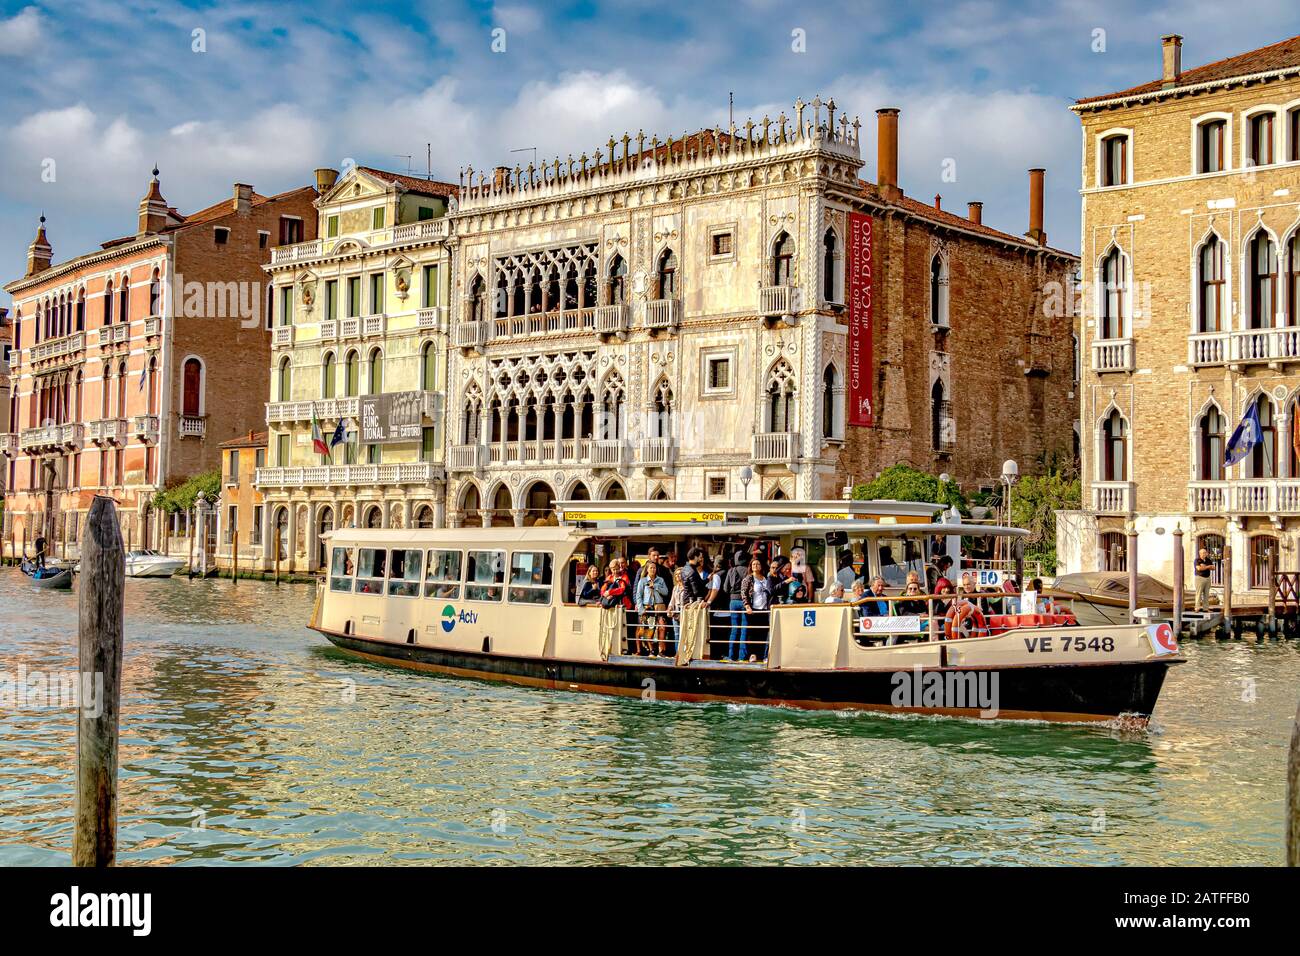 Eine Route 2 Vaporetto, die mit Passagieren besetzt ist, vorbei an der Ca' d'Oro, einem gotischen Palast am Canal Grande, im Viertel Cannaregio, Venedig Italien Stockfoto